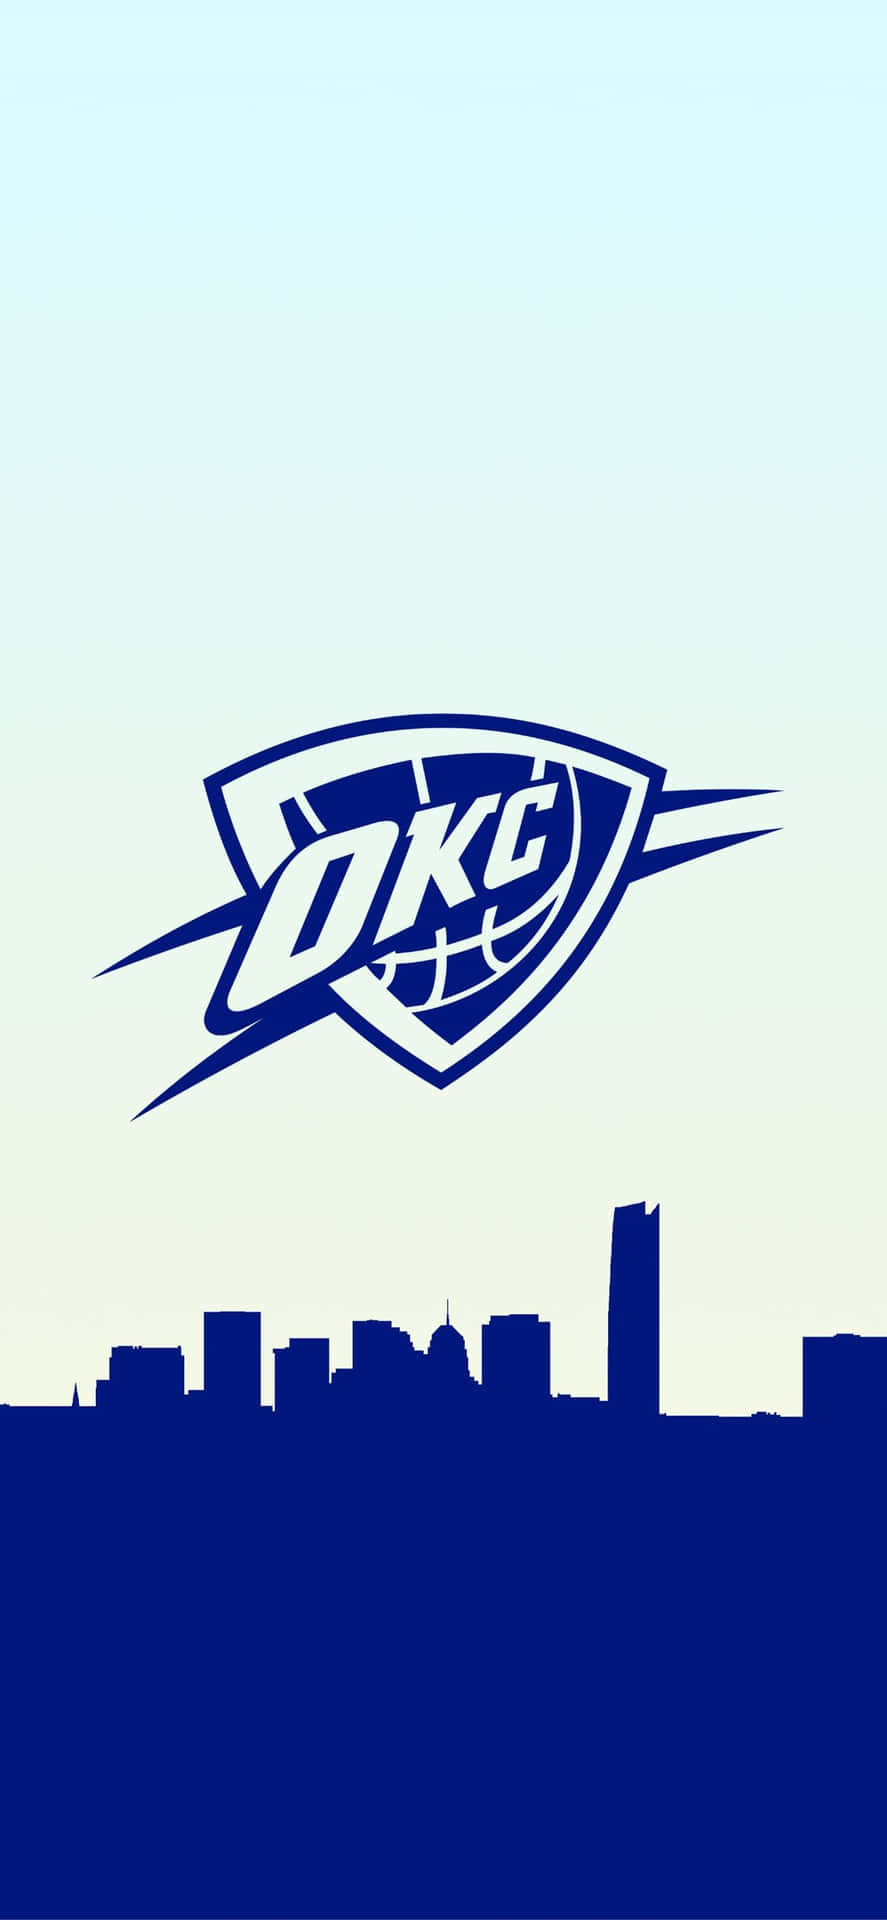 1. Logo Tapet af NBA Basketballholdet Oklahoma City Thunders: Billedet af det populære basketballhold Oklahoma City Thunders logo vil holde dit skrivebord levende. Wallpaper